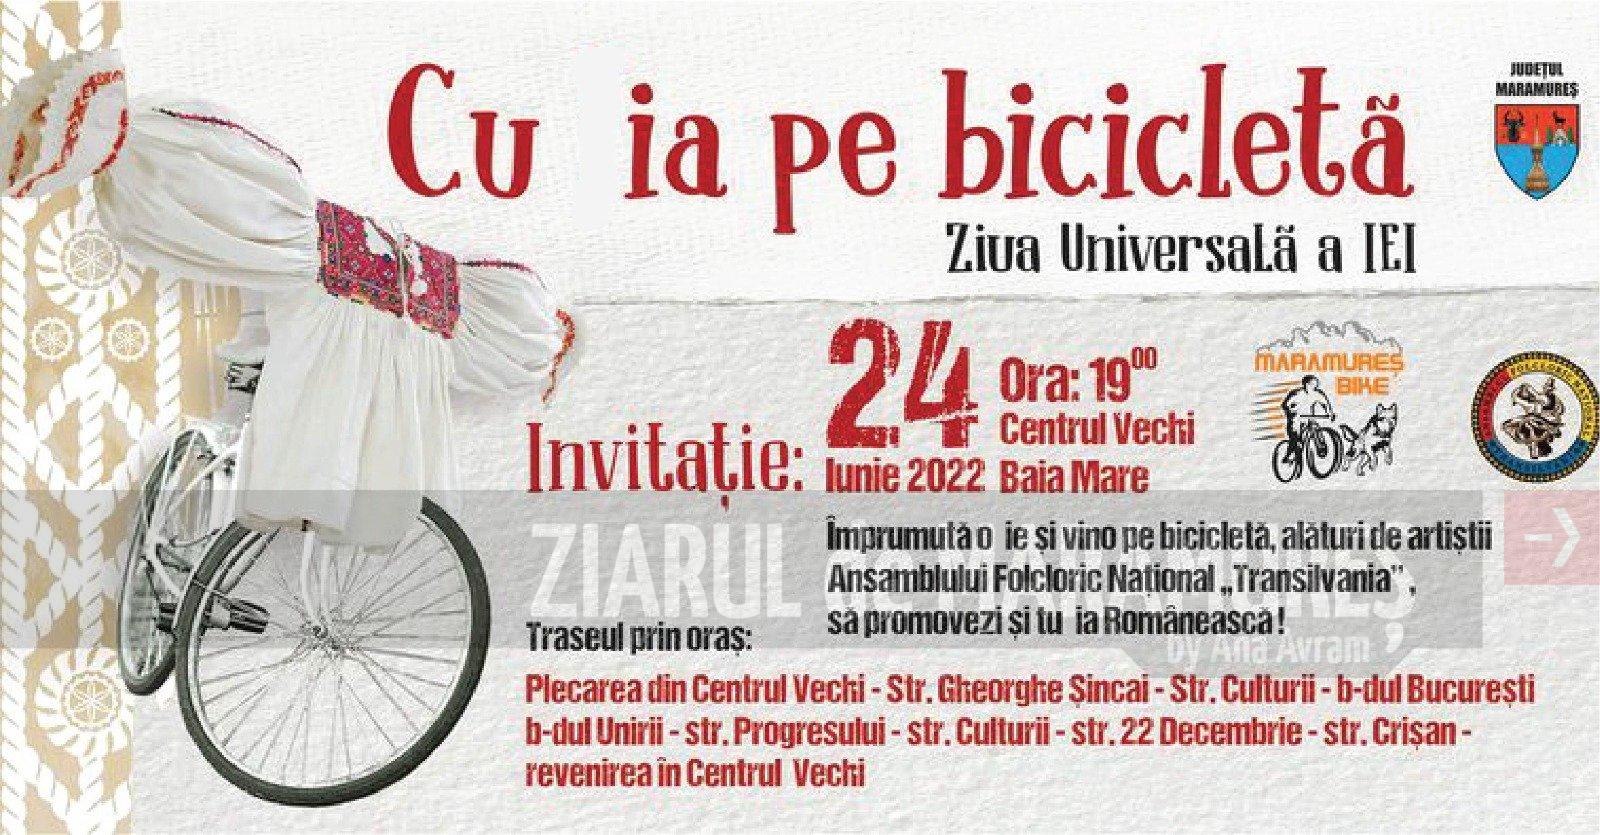 CJ Maramureș: Vineri, ”Cu ia pe bicicletă”! Plecarea-centrul vechi, Baia Mare